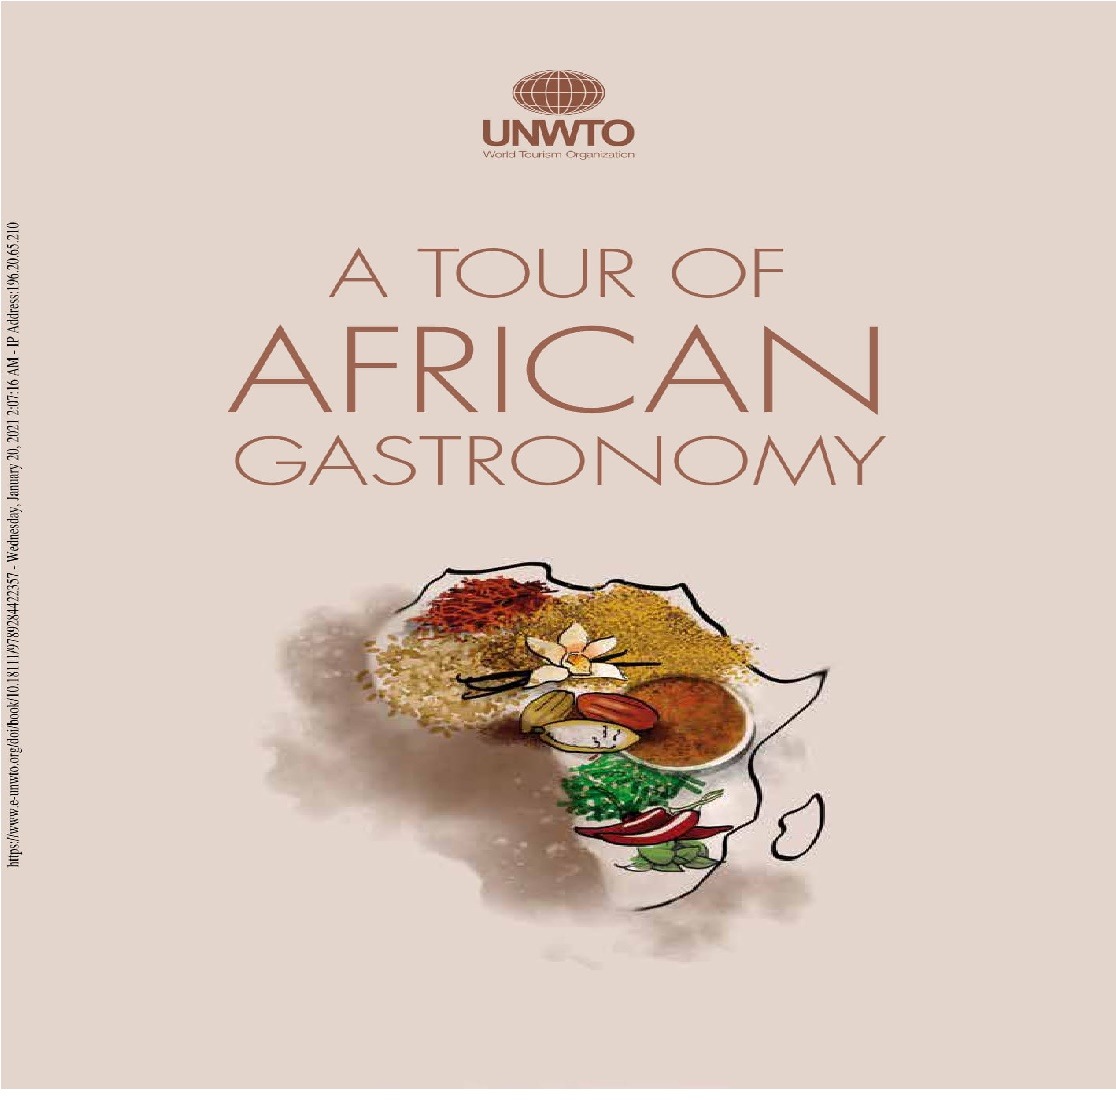 Un livre sur la gastronomie africaine intitulé “Voyage à travers la gastronomie africaine”